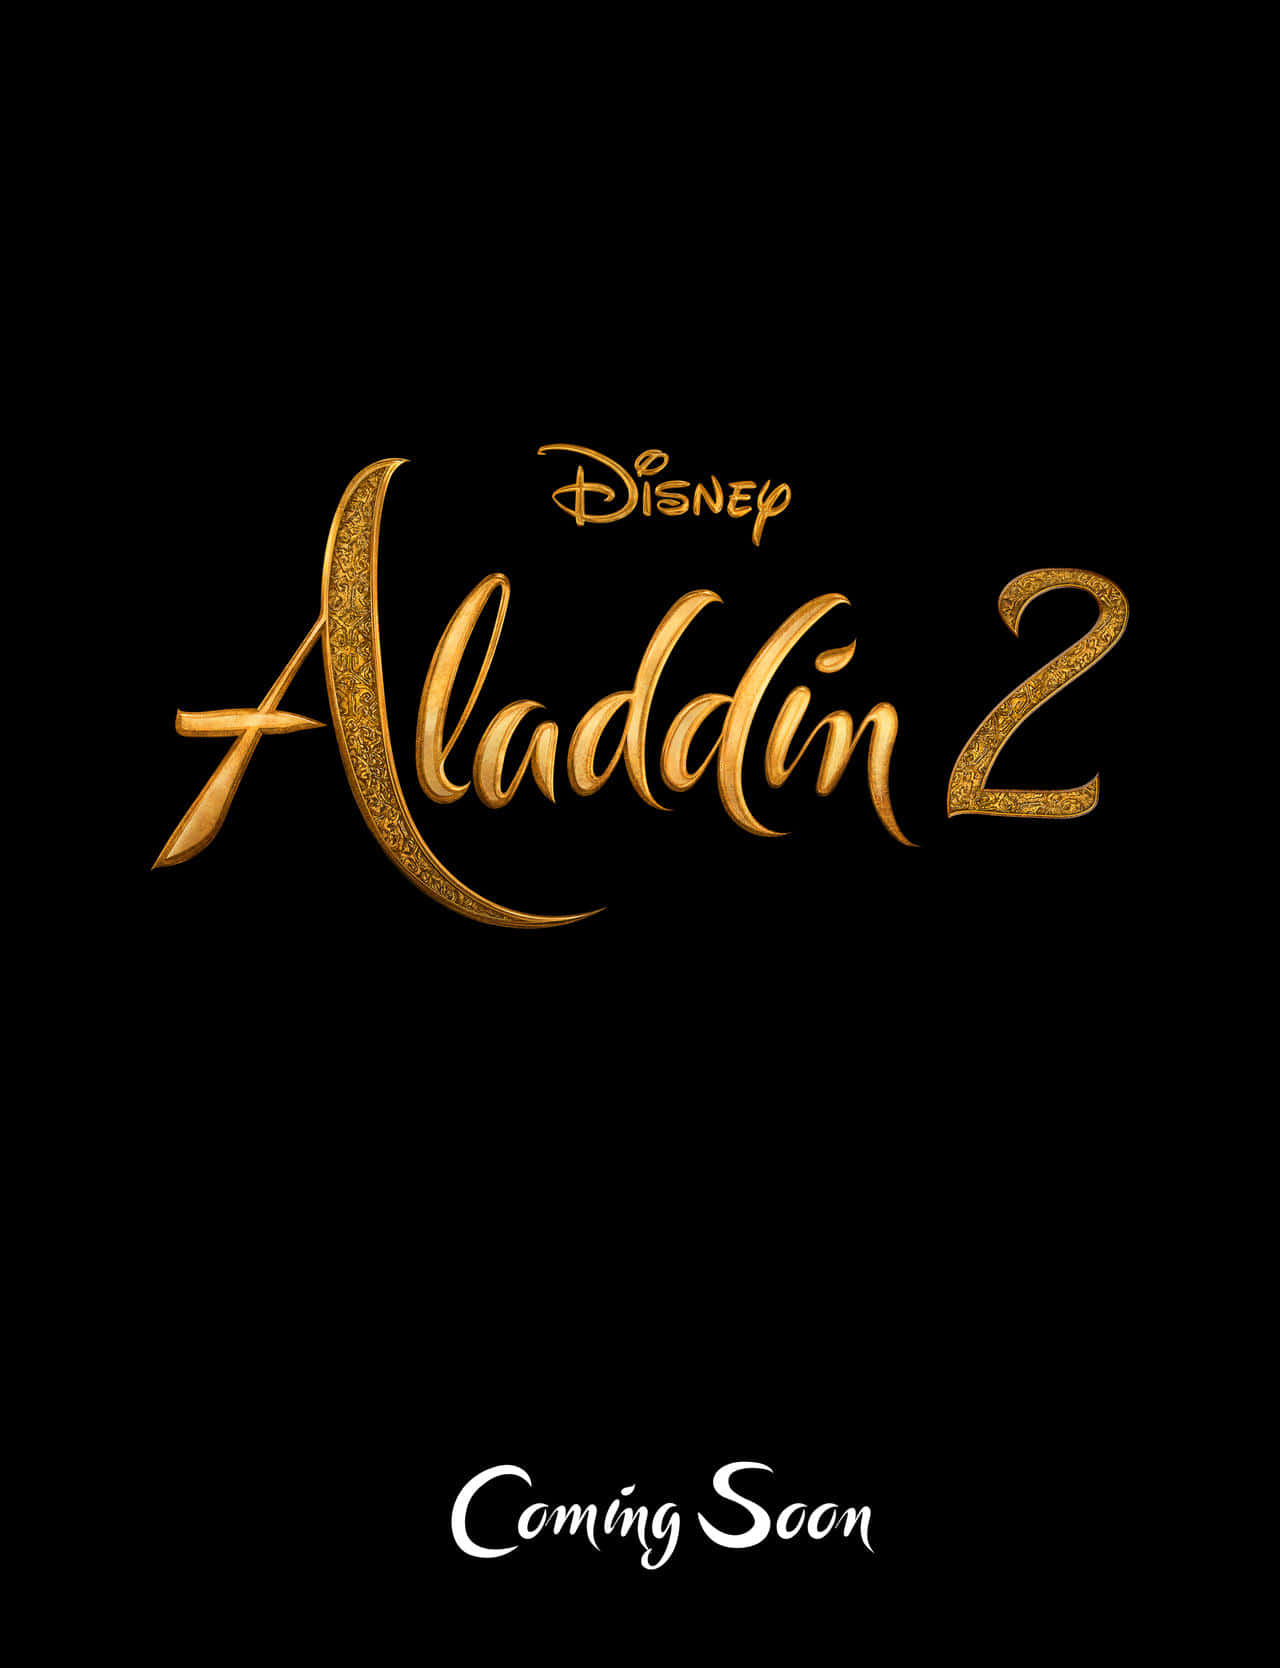 Aladdinrouba Um Olhar Para A Encantadora Princesa Jasmine.